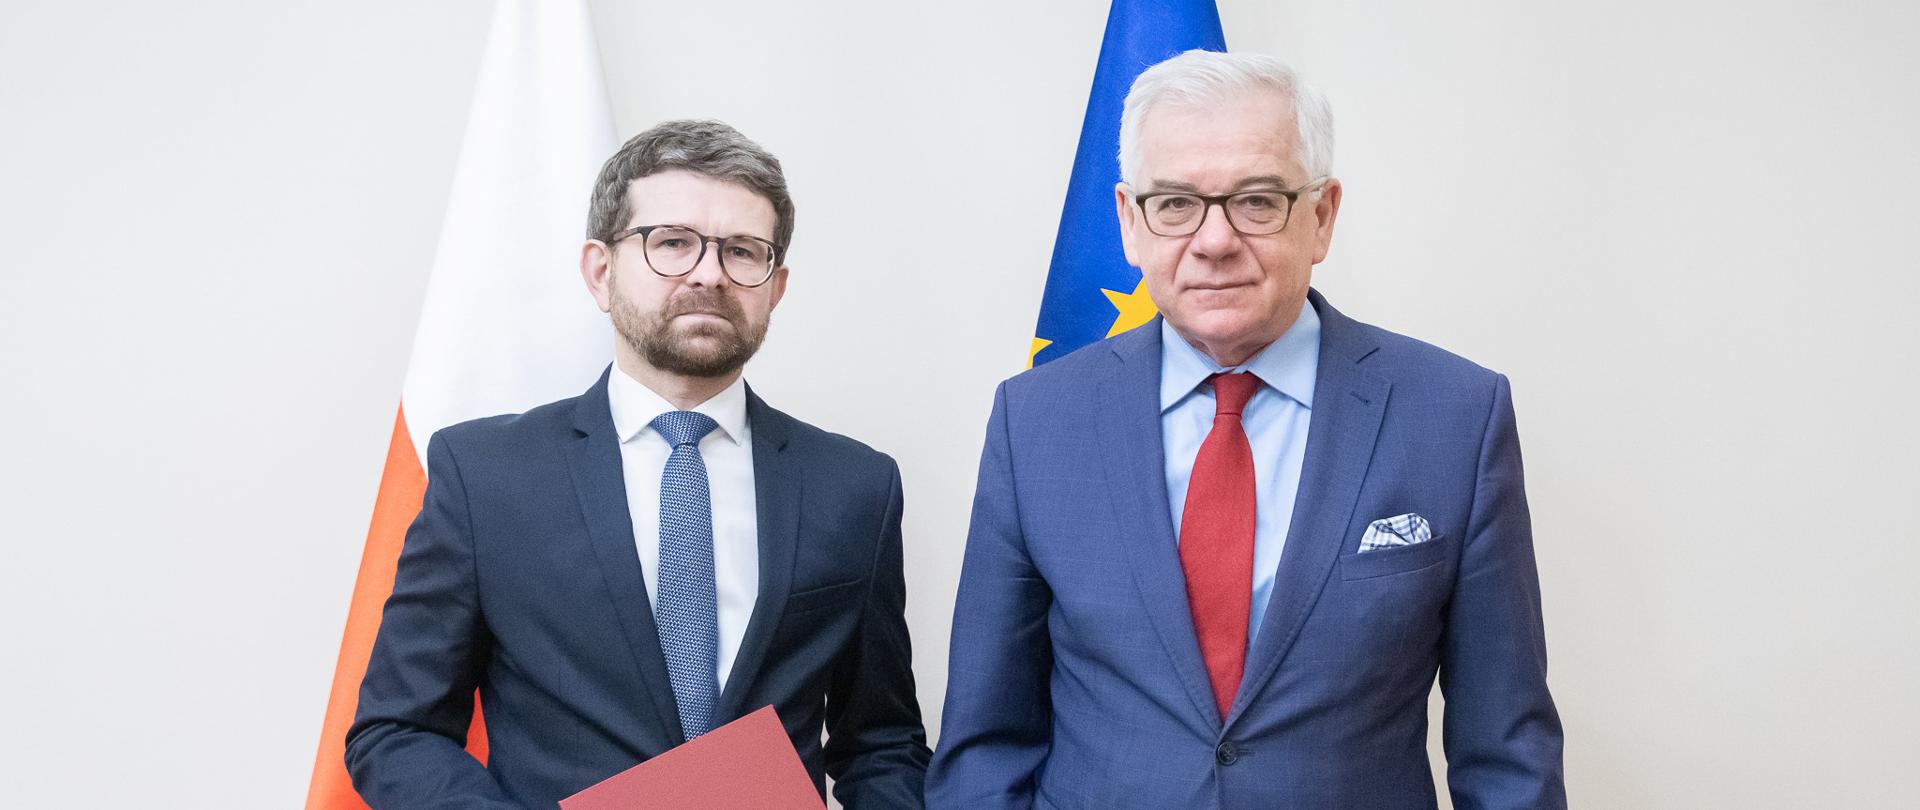 Tomasz Czyszek appointed new Polish ambassador to Malta